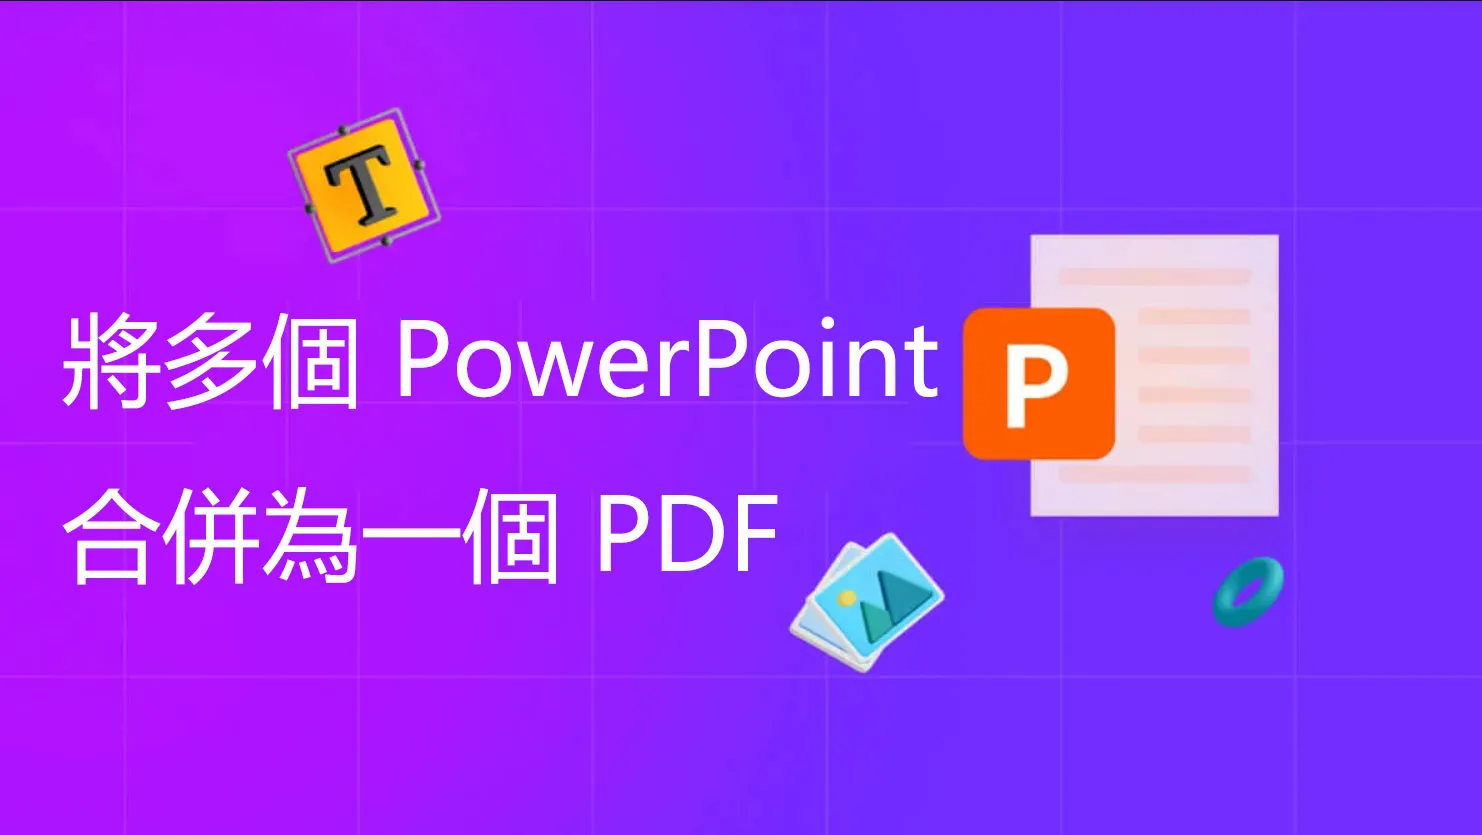 如何將多個 PowerPoint 合併為一個 PDF？ 